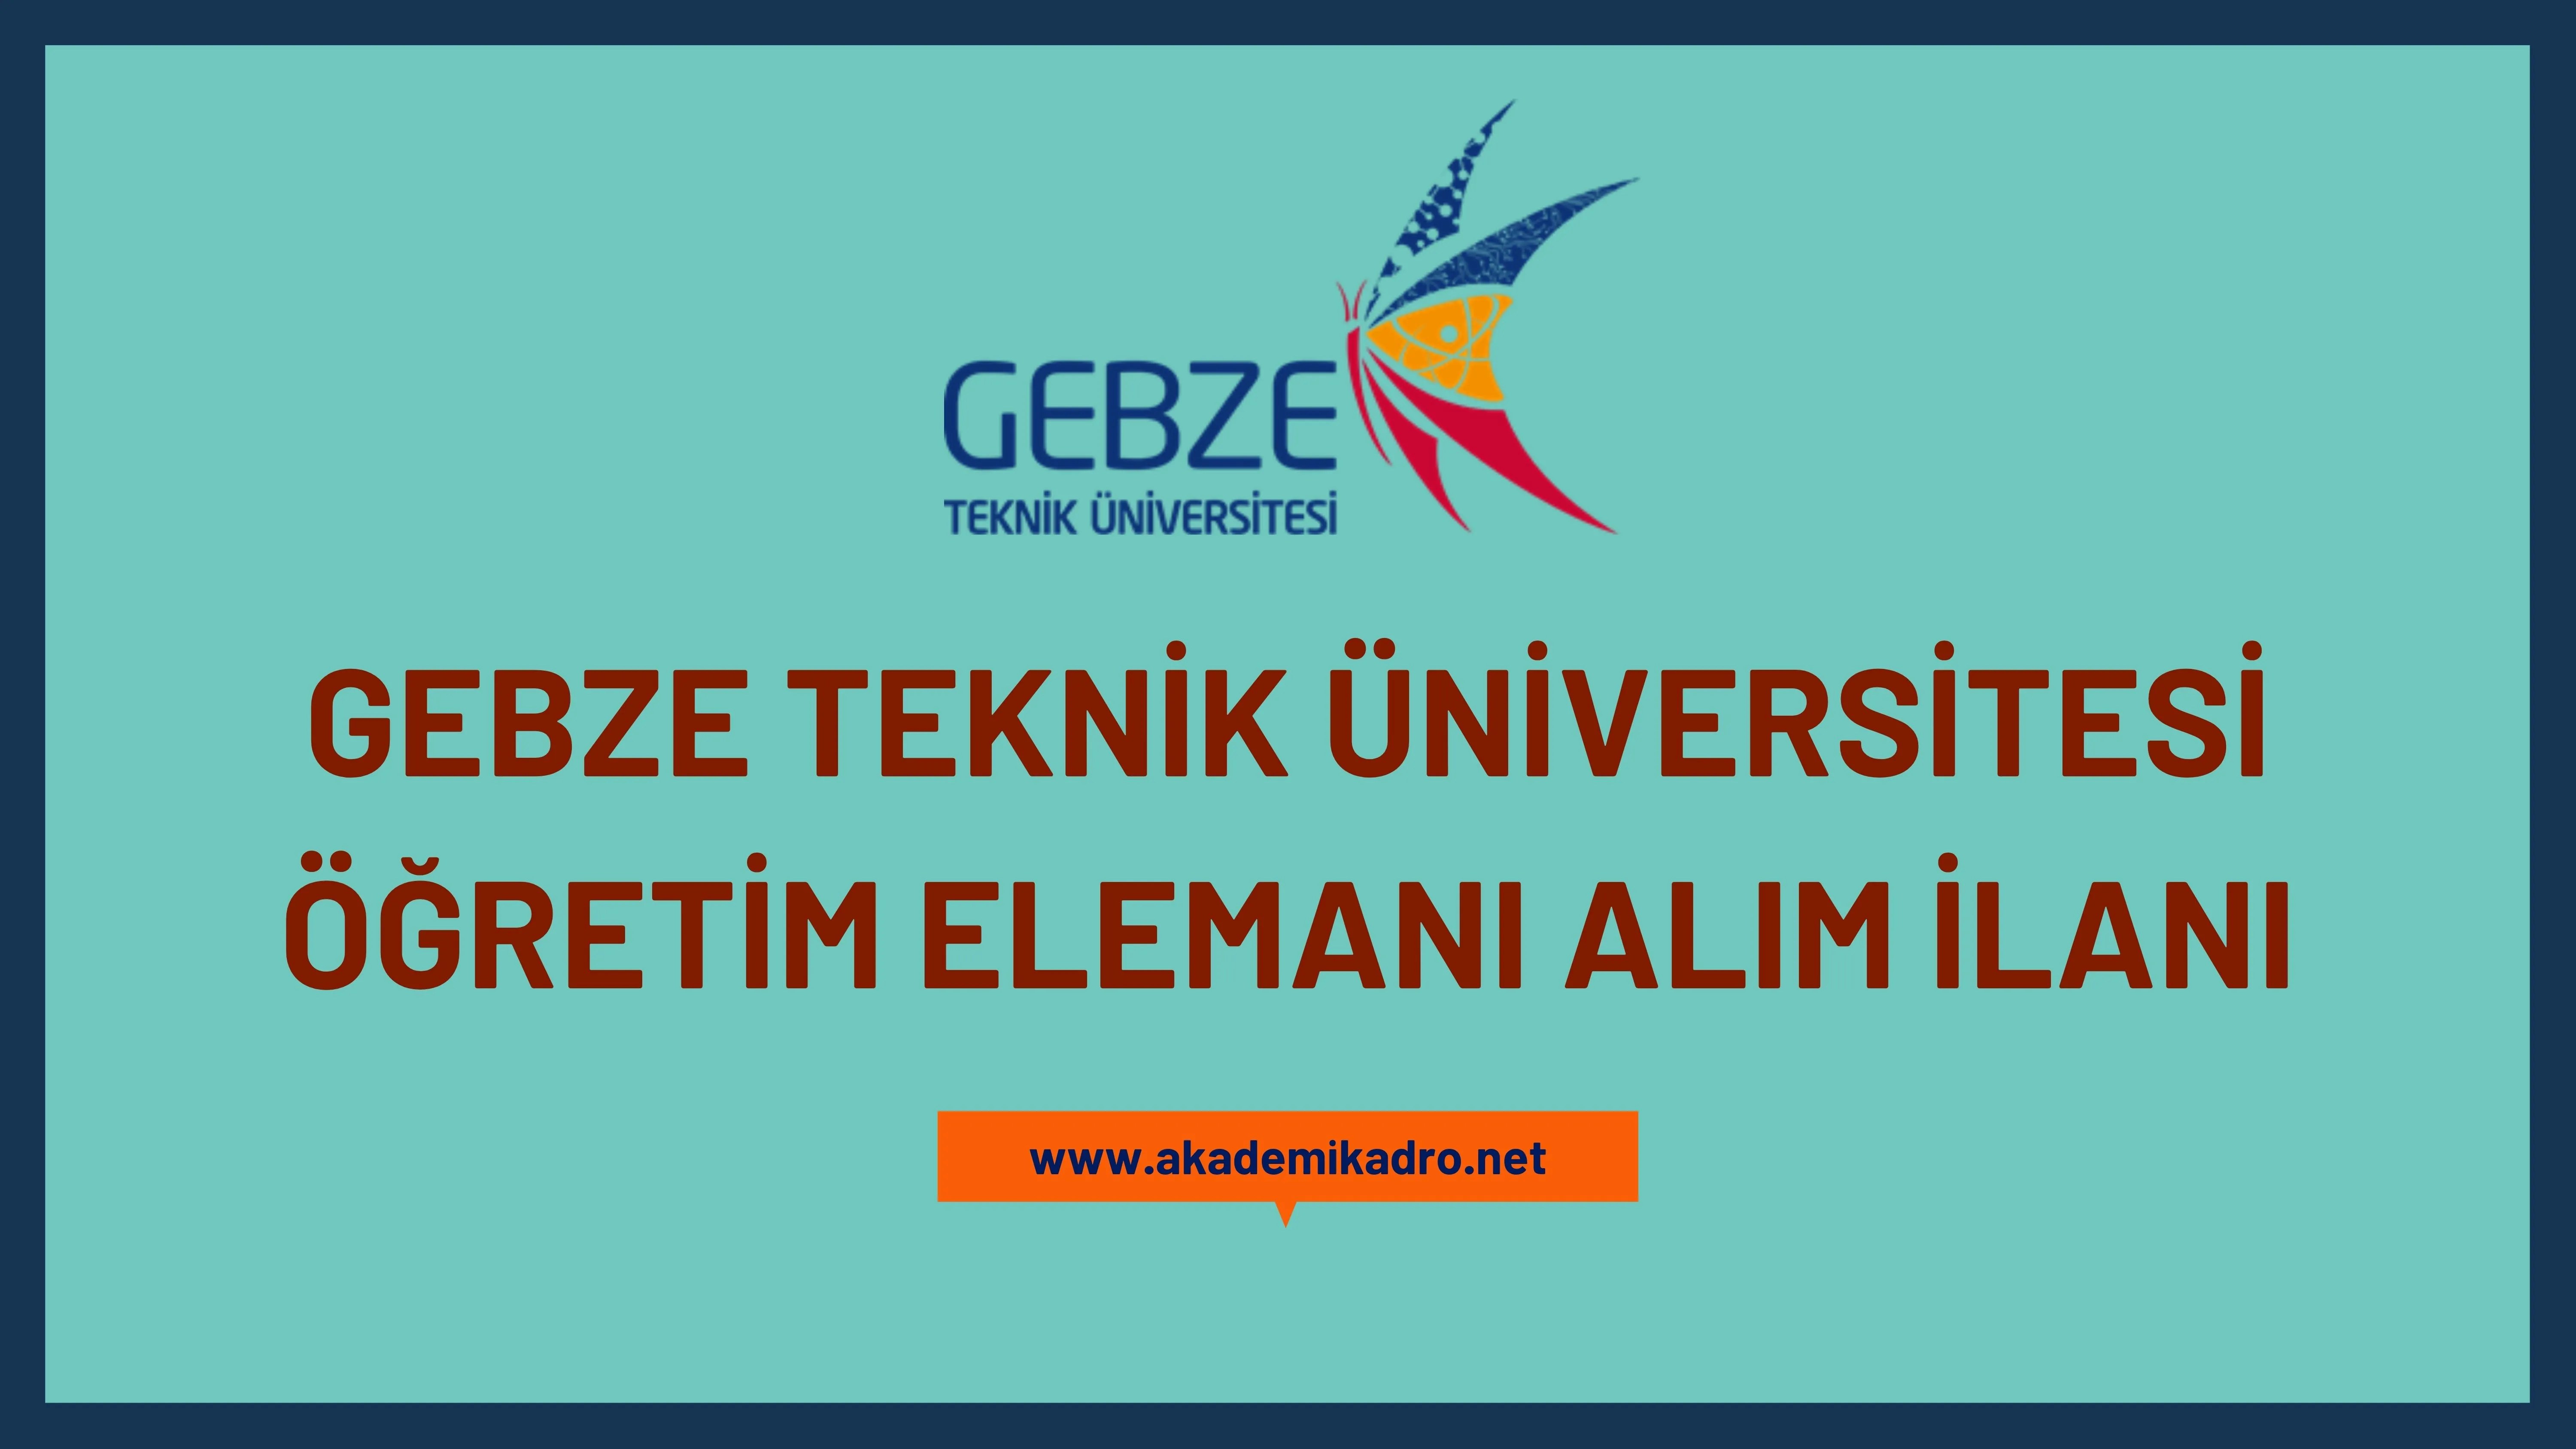 Gebze Teknik Üniversitesi 25 Araştırma görevlisi ve 3 öğretim görevlisi alacak.